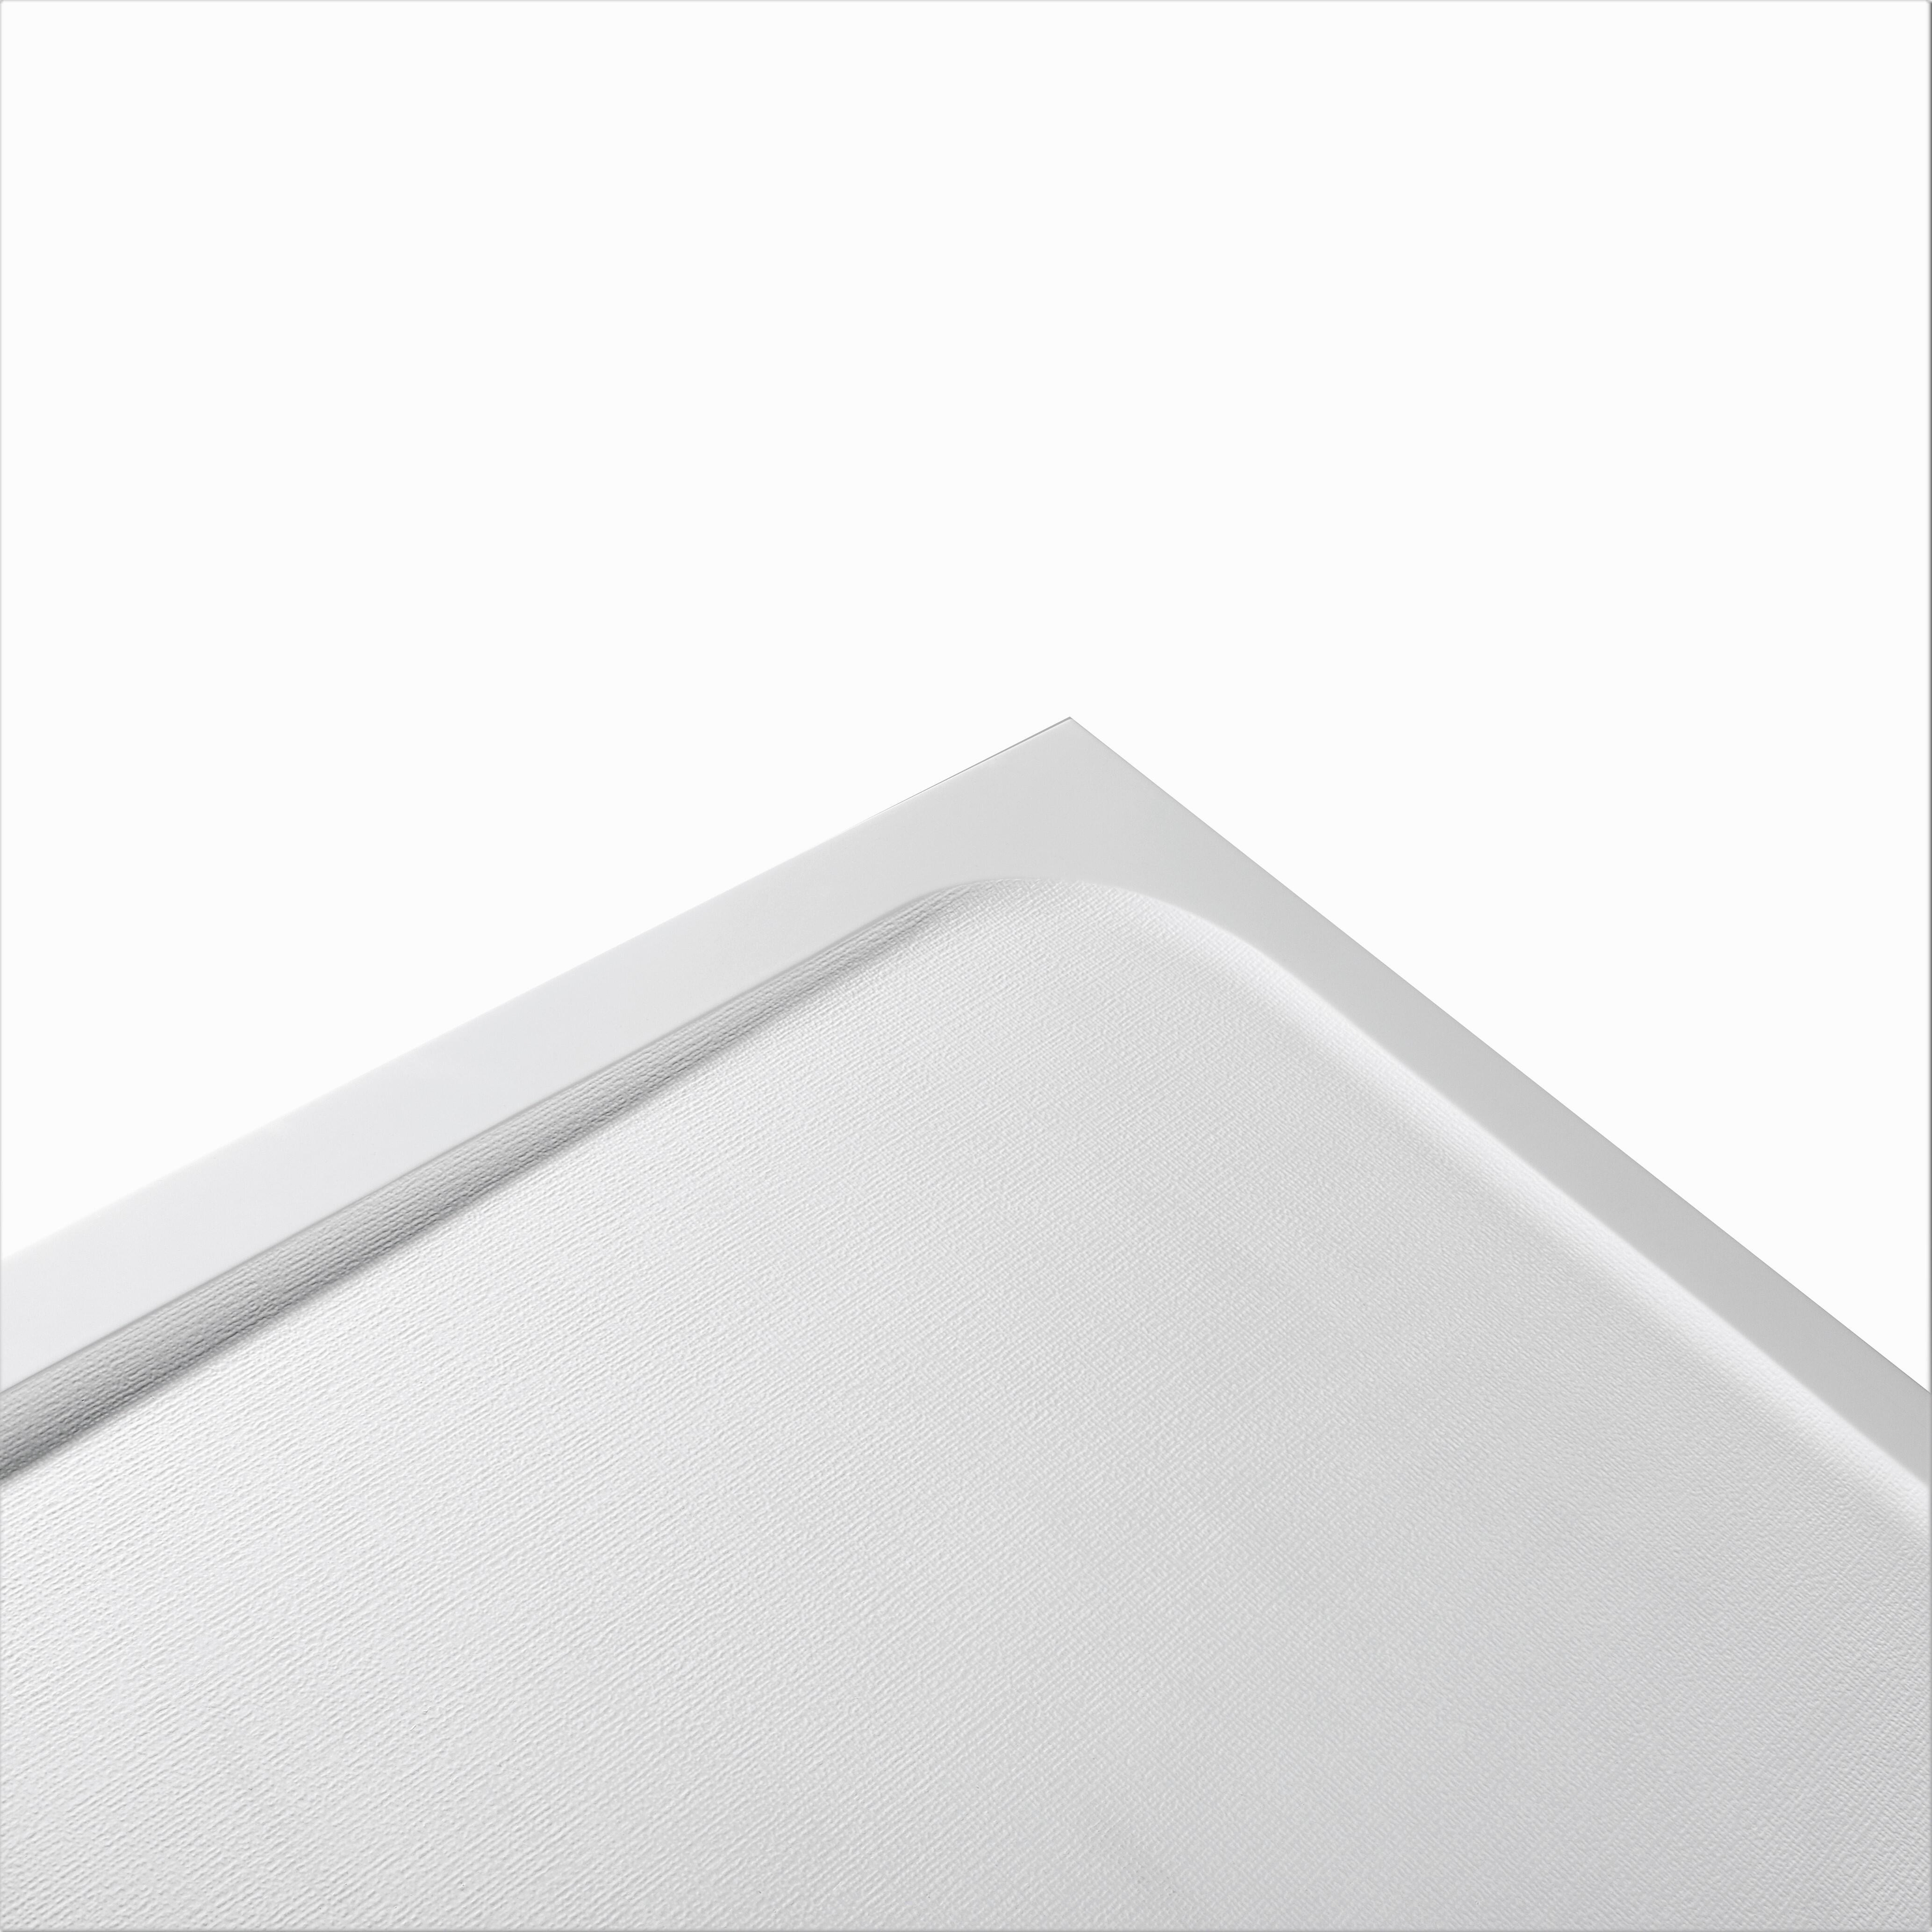 Piatto doccia resina sintetica e polvere di marmo Easy 70 x 160 cm bianco - 2